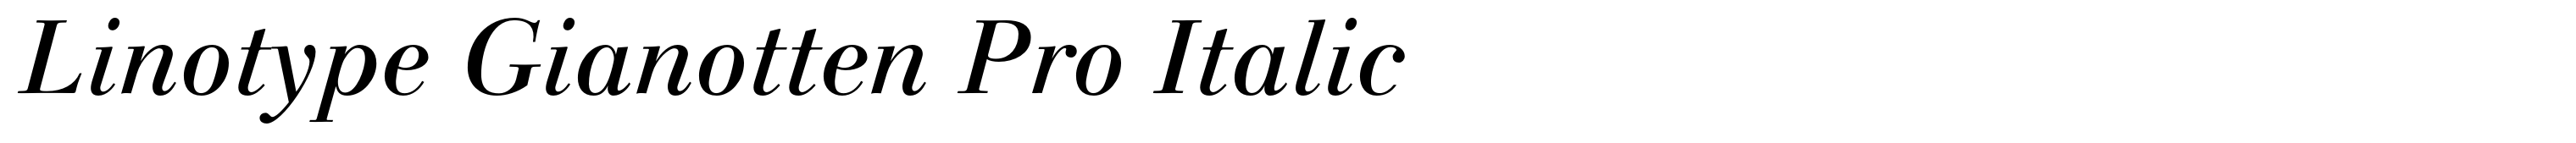 Linotype Gianotten Pro Italic